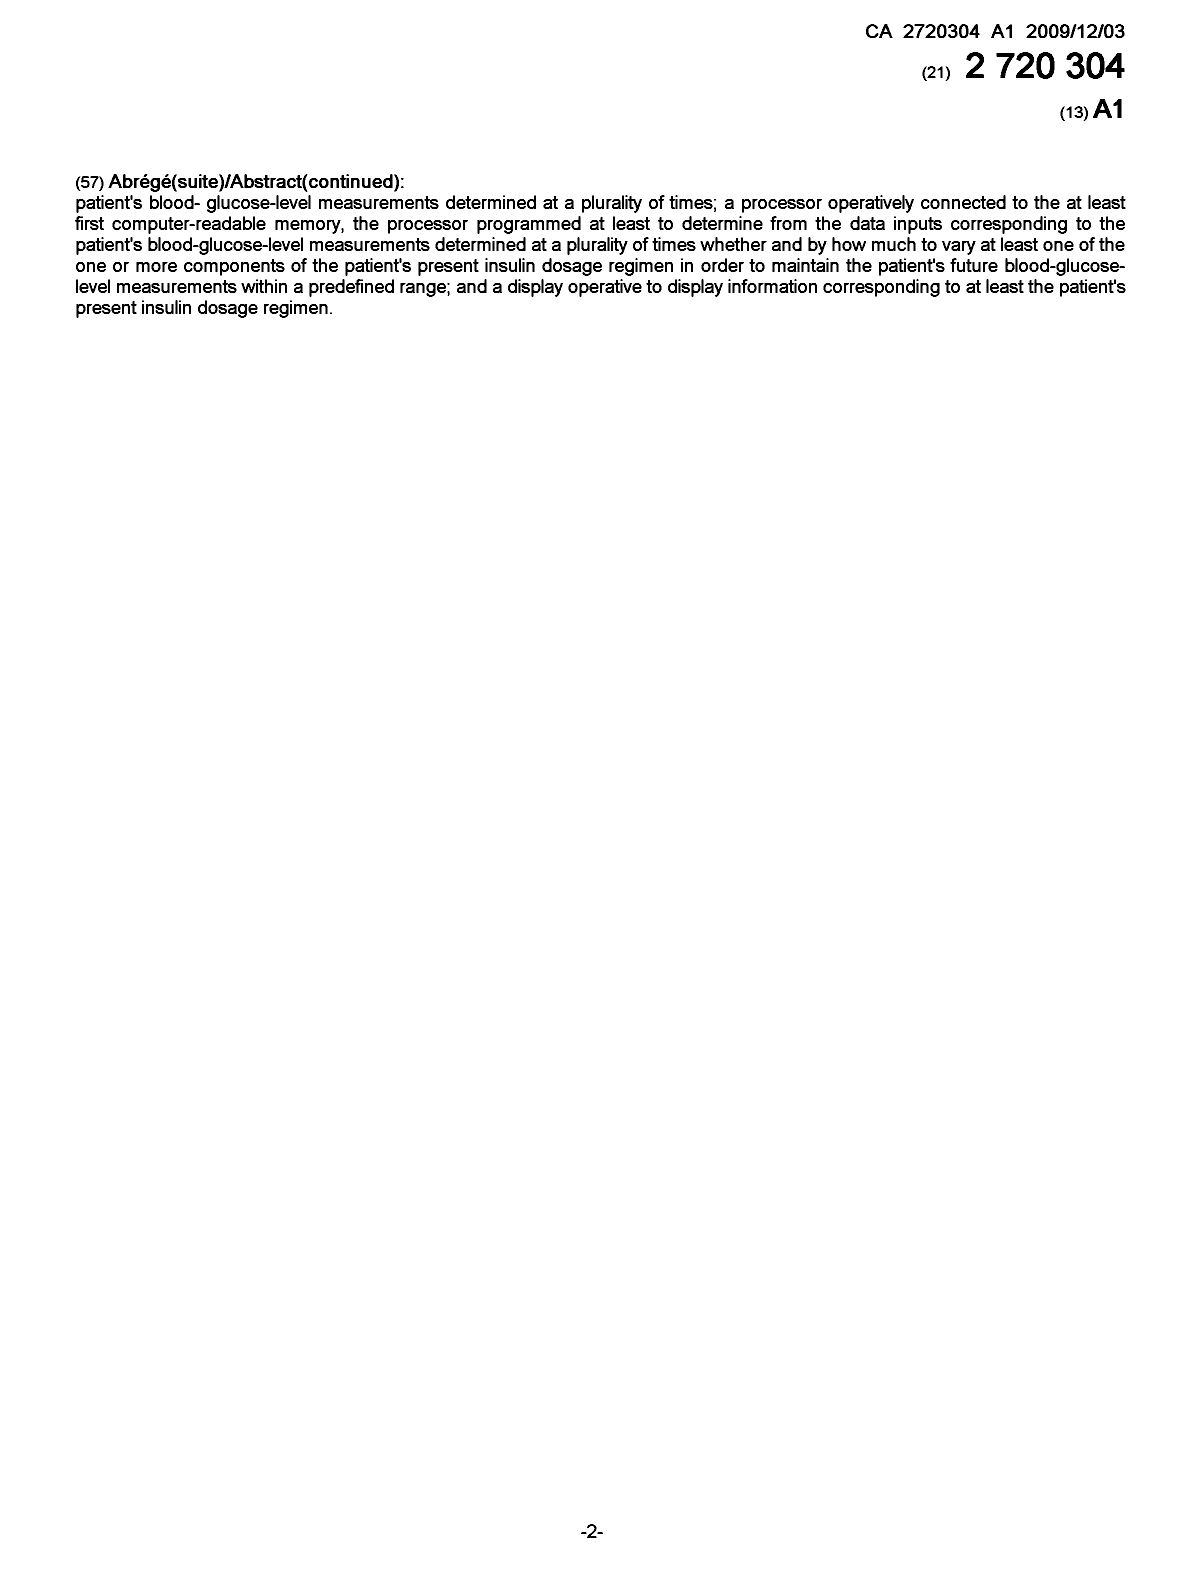 Document de brevet canadien 2720304. Page couverture 20101204. Image 2 de 2